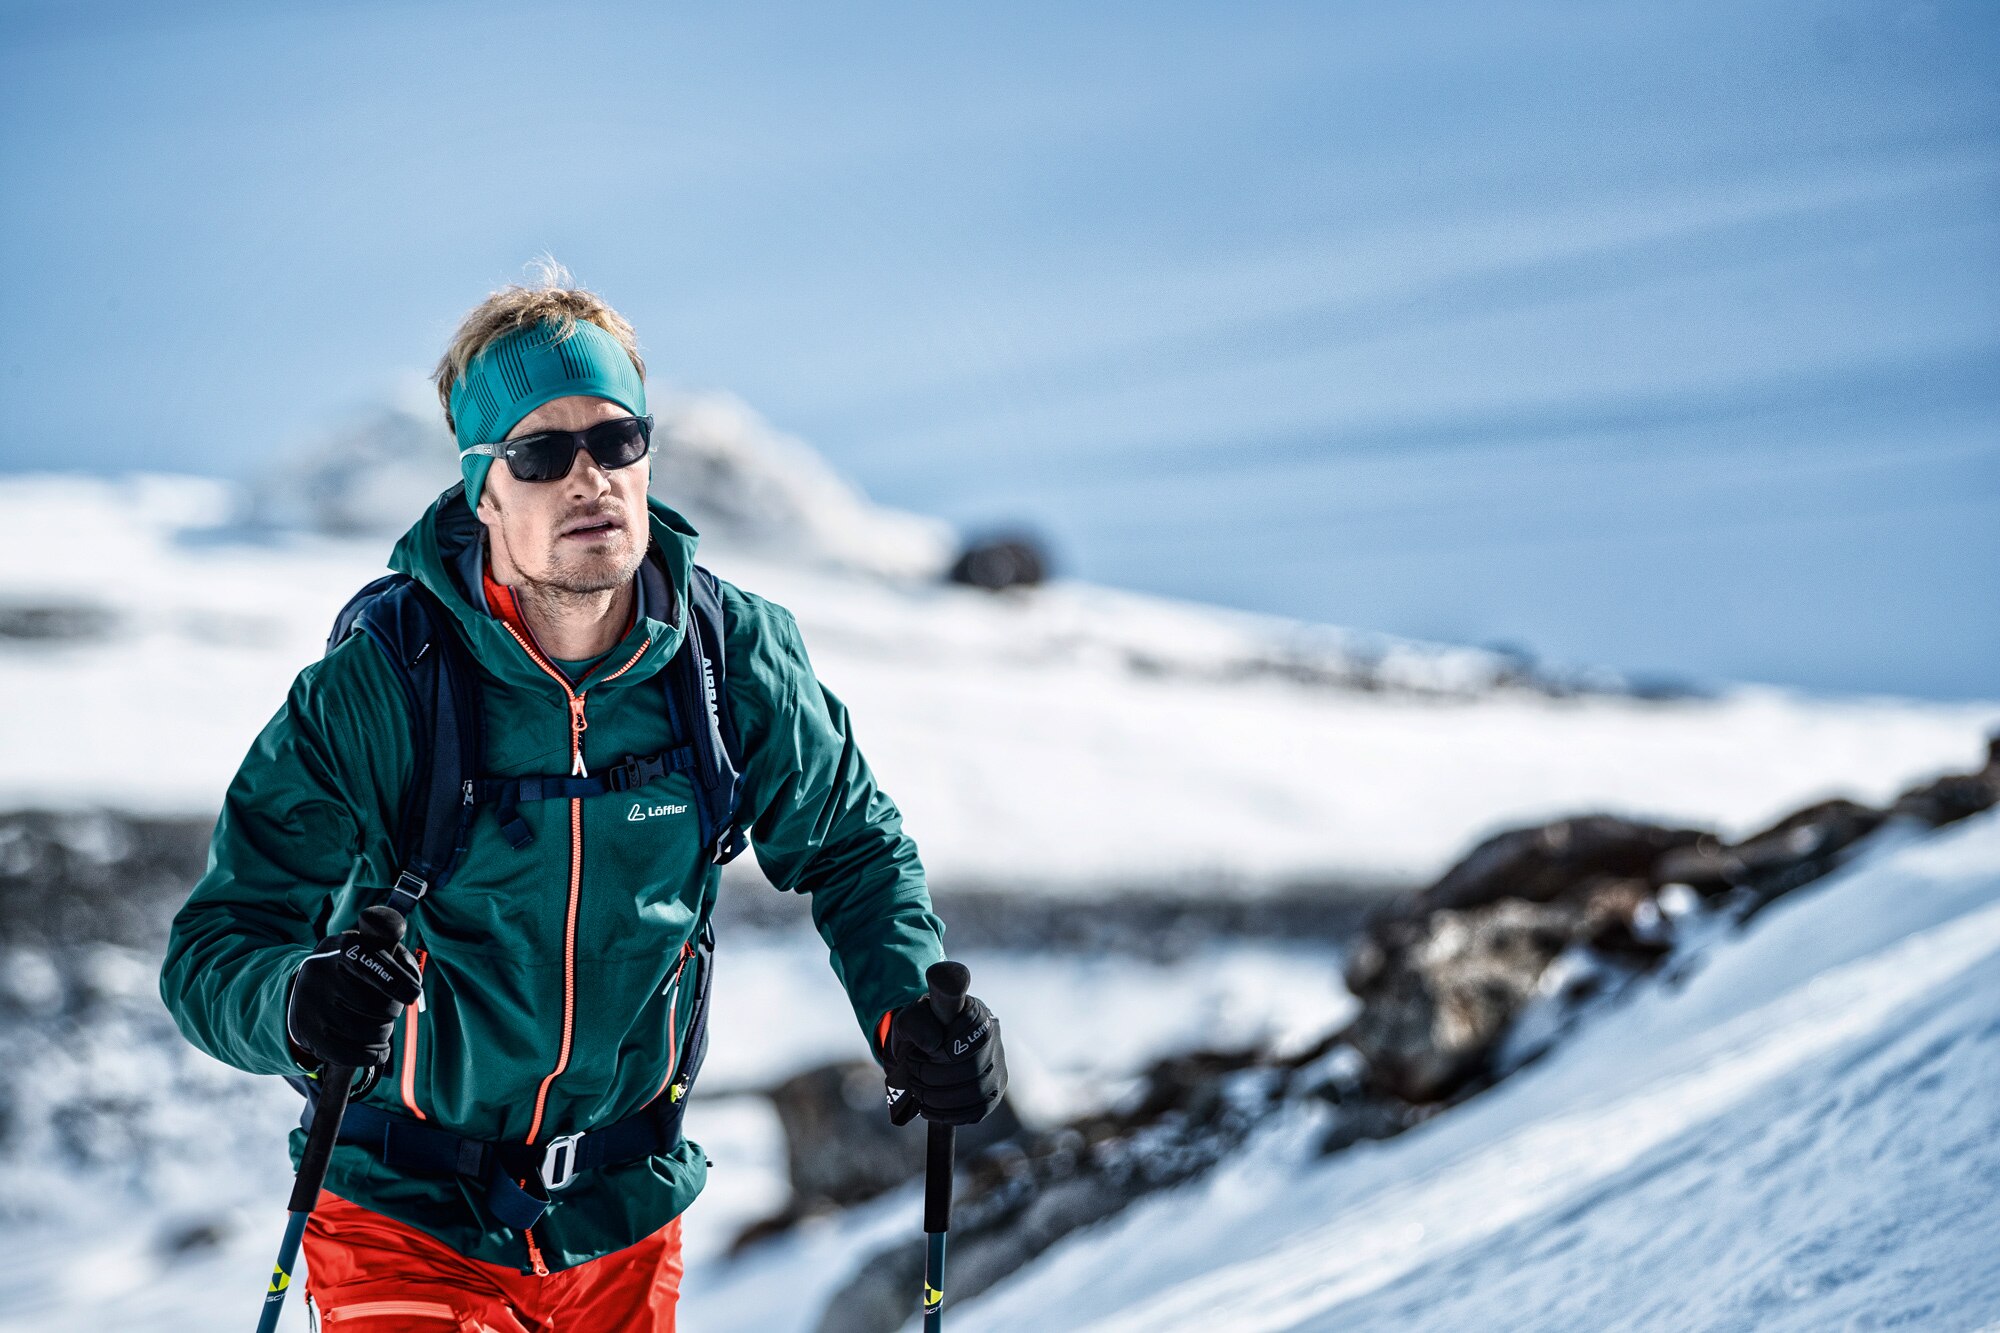 Die Bekleidung auf Skitouren muss atmungsaktiv sein, wärmen und einen Wetterschutz bieten.